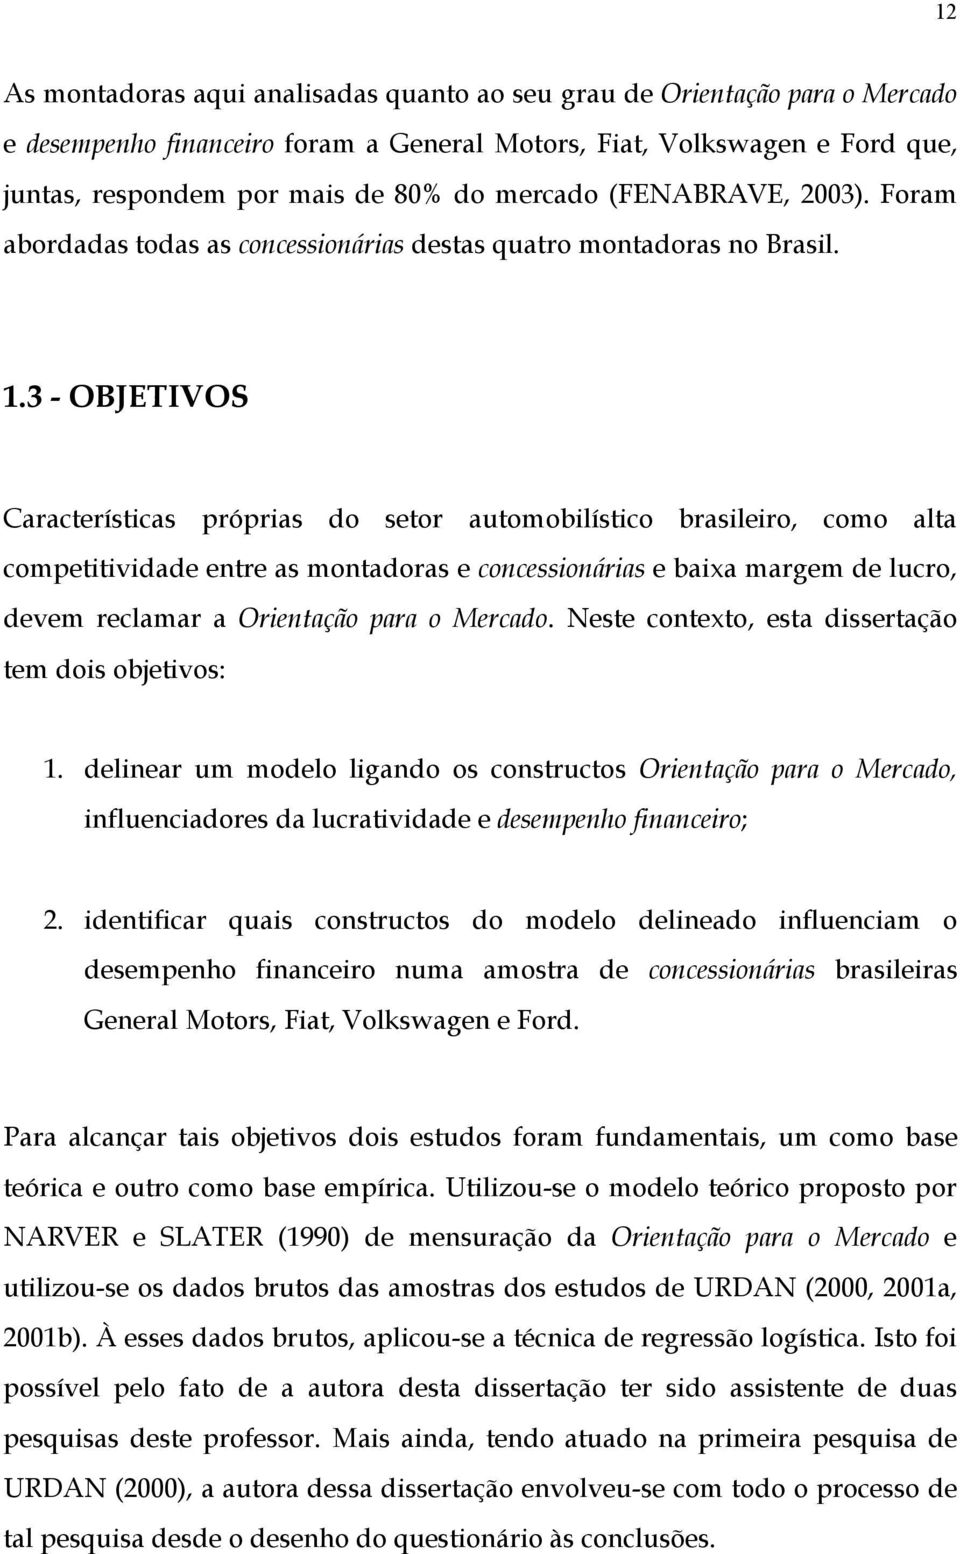 3 - OBJETIVOS Características próprias do setor automobilístico brasileiro, como alta competitividade entre as montadoras e concessionárias e baixa margem de lucro, devem reclamar a Orientação para o